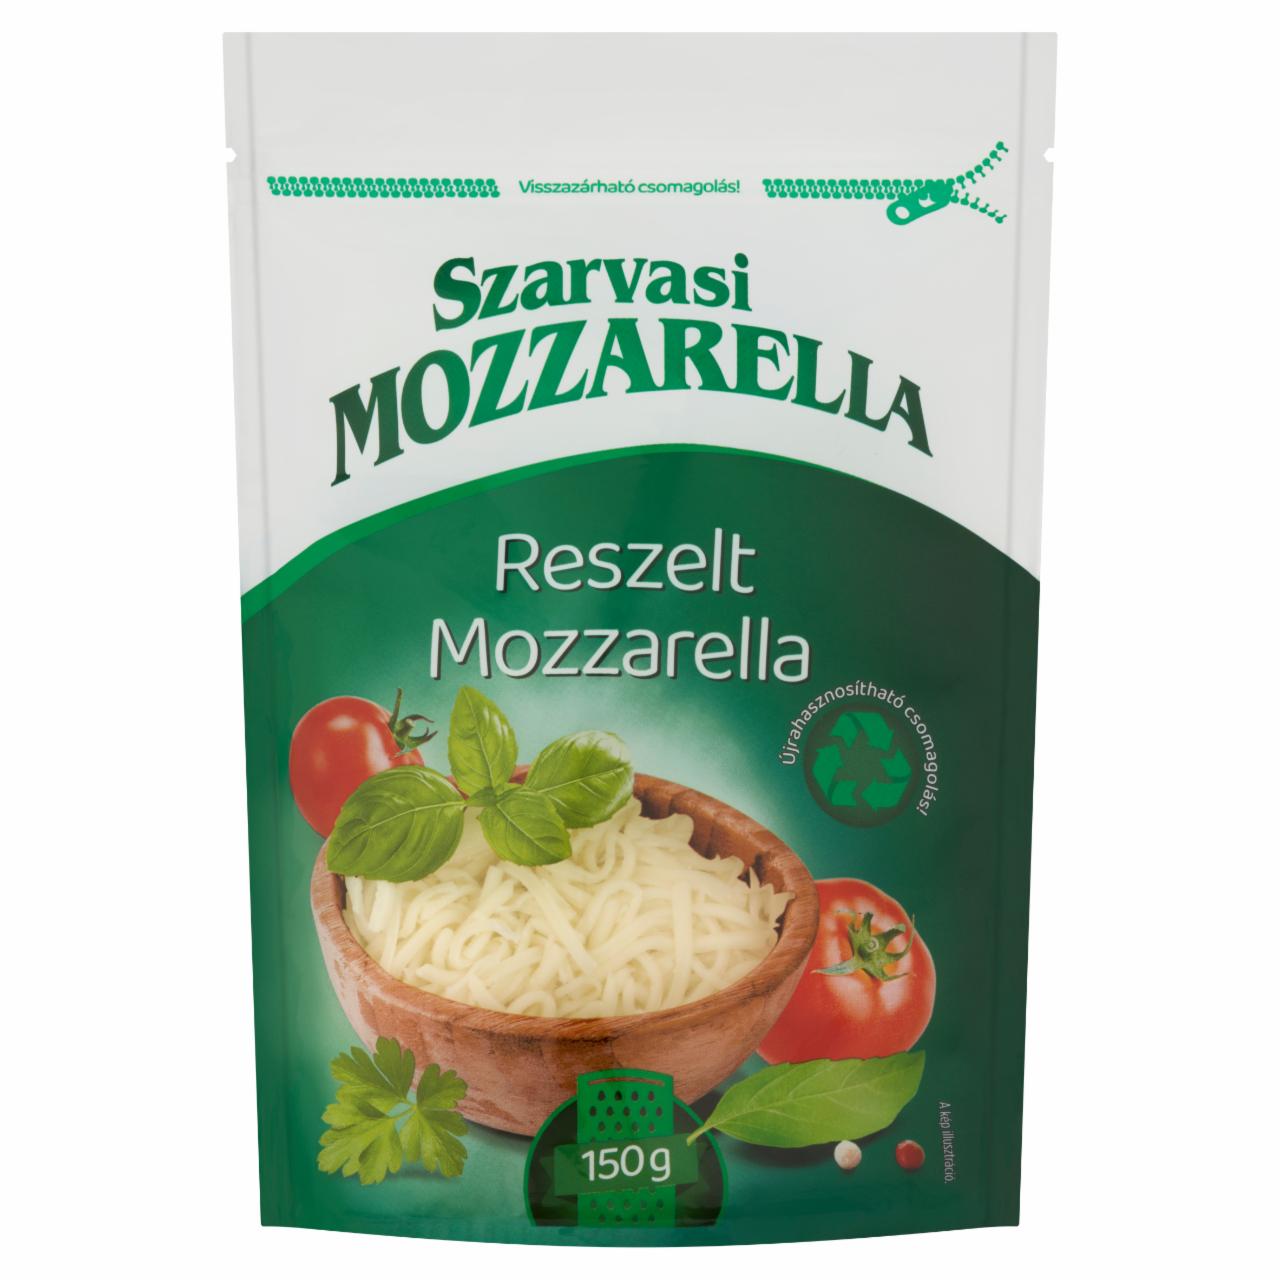 Képek - Szarvasi reszelt mozzarella 150 g